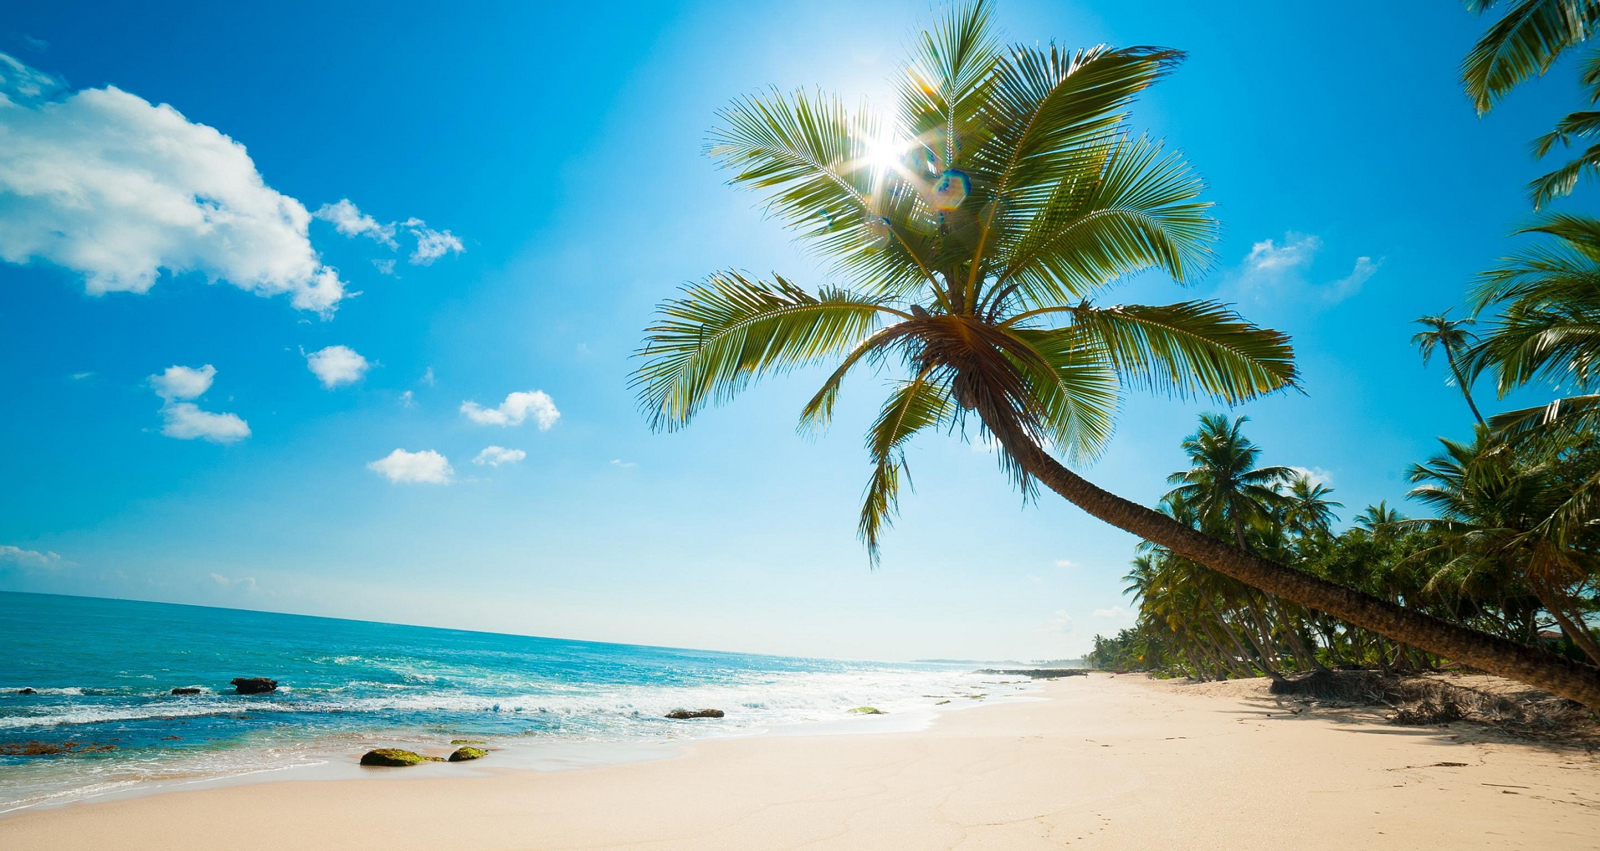 Bài Dài, Phú Quốc đã từng được bình chọn là một trong 13 bãi biển hoang sơ và đẹp nhất thế giới